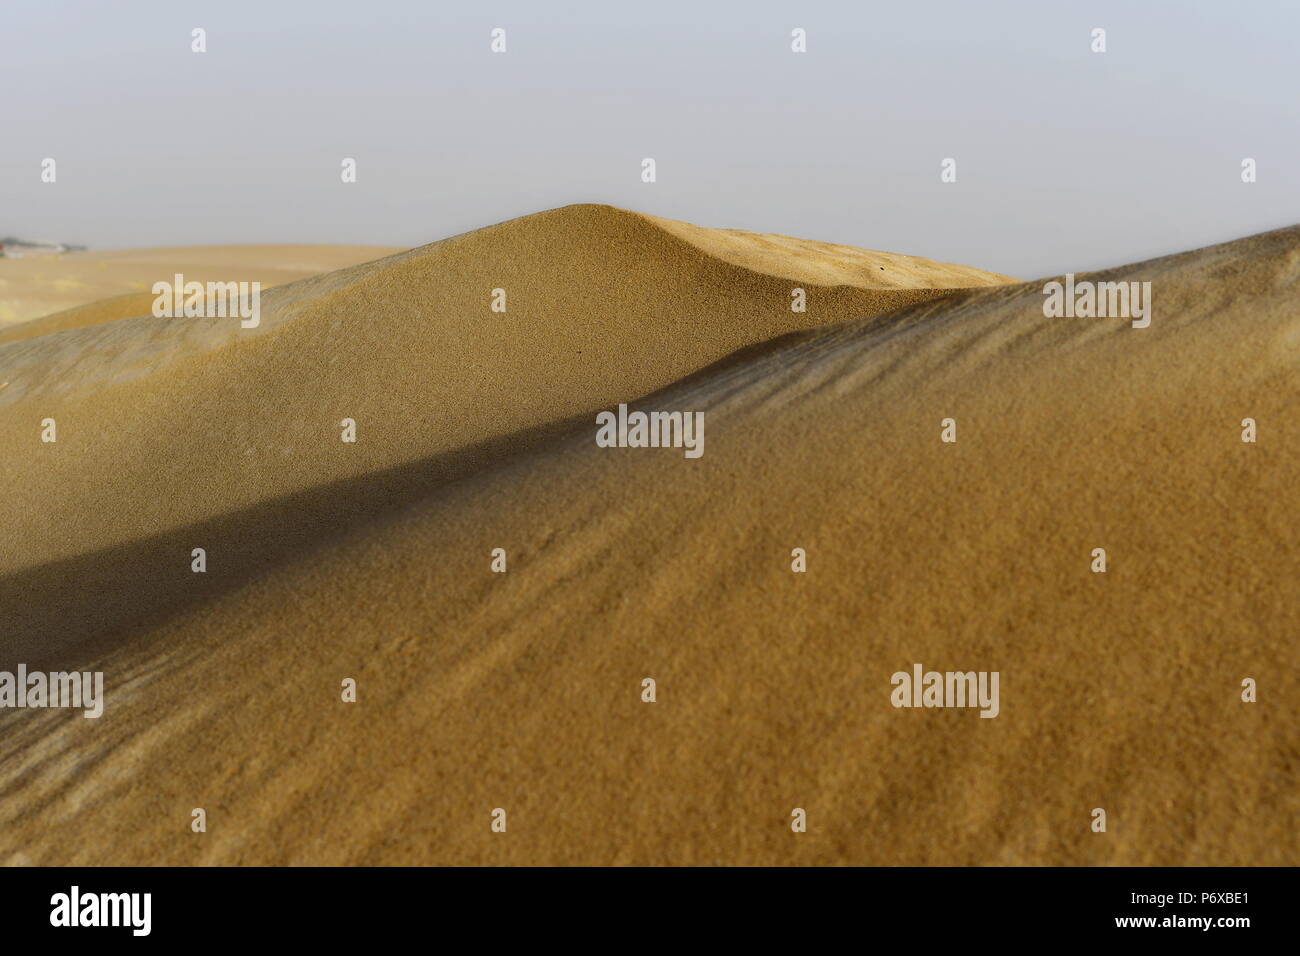 Le dune di sabbia nel deserto di Arabia Saudita. Nessun uomo, nessuna vita solo sabbia ogni dove e solo sabbia e il cielo in background Foto Stock